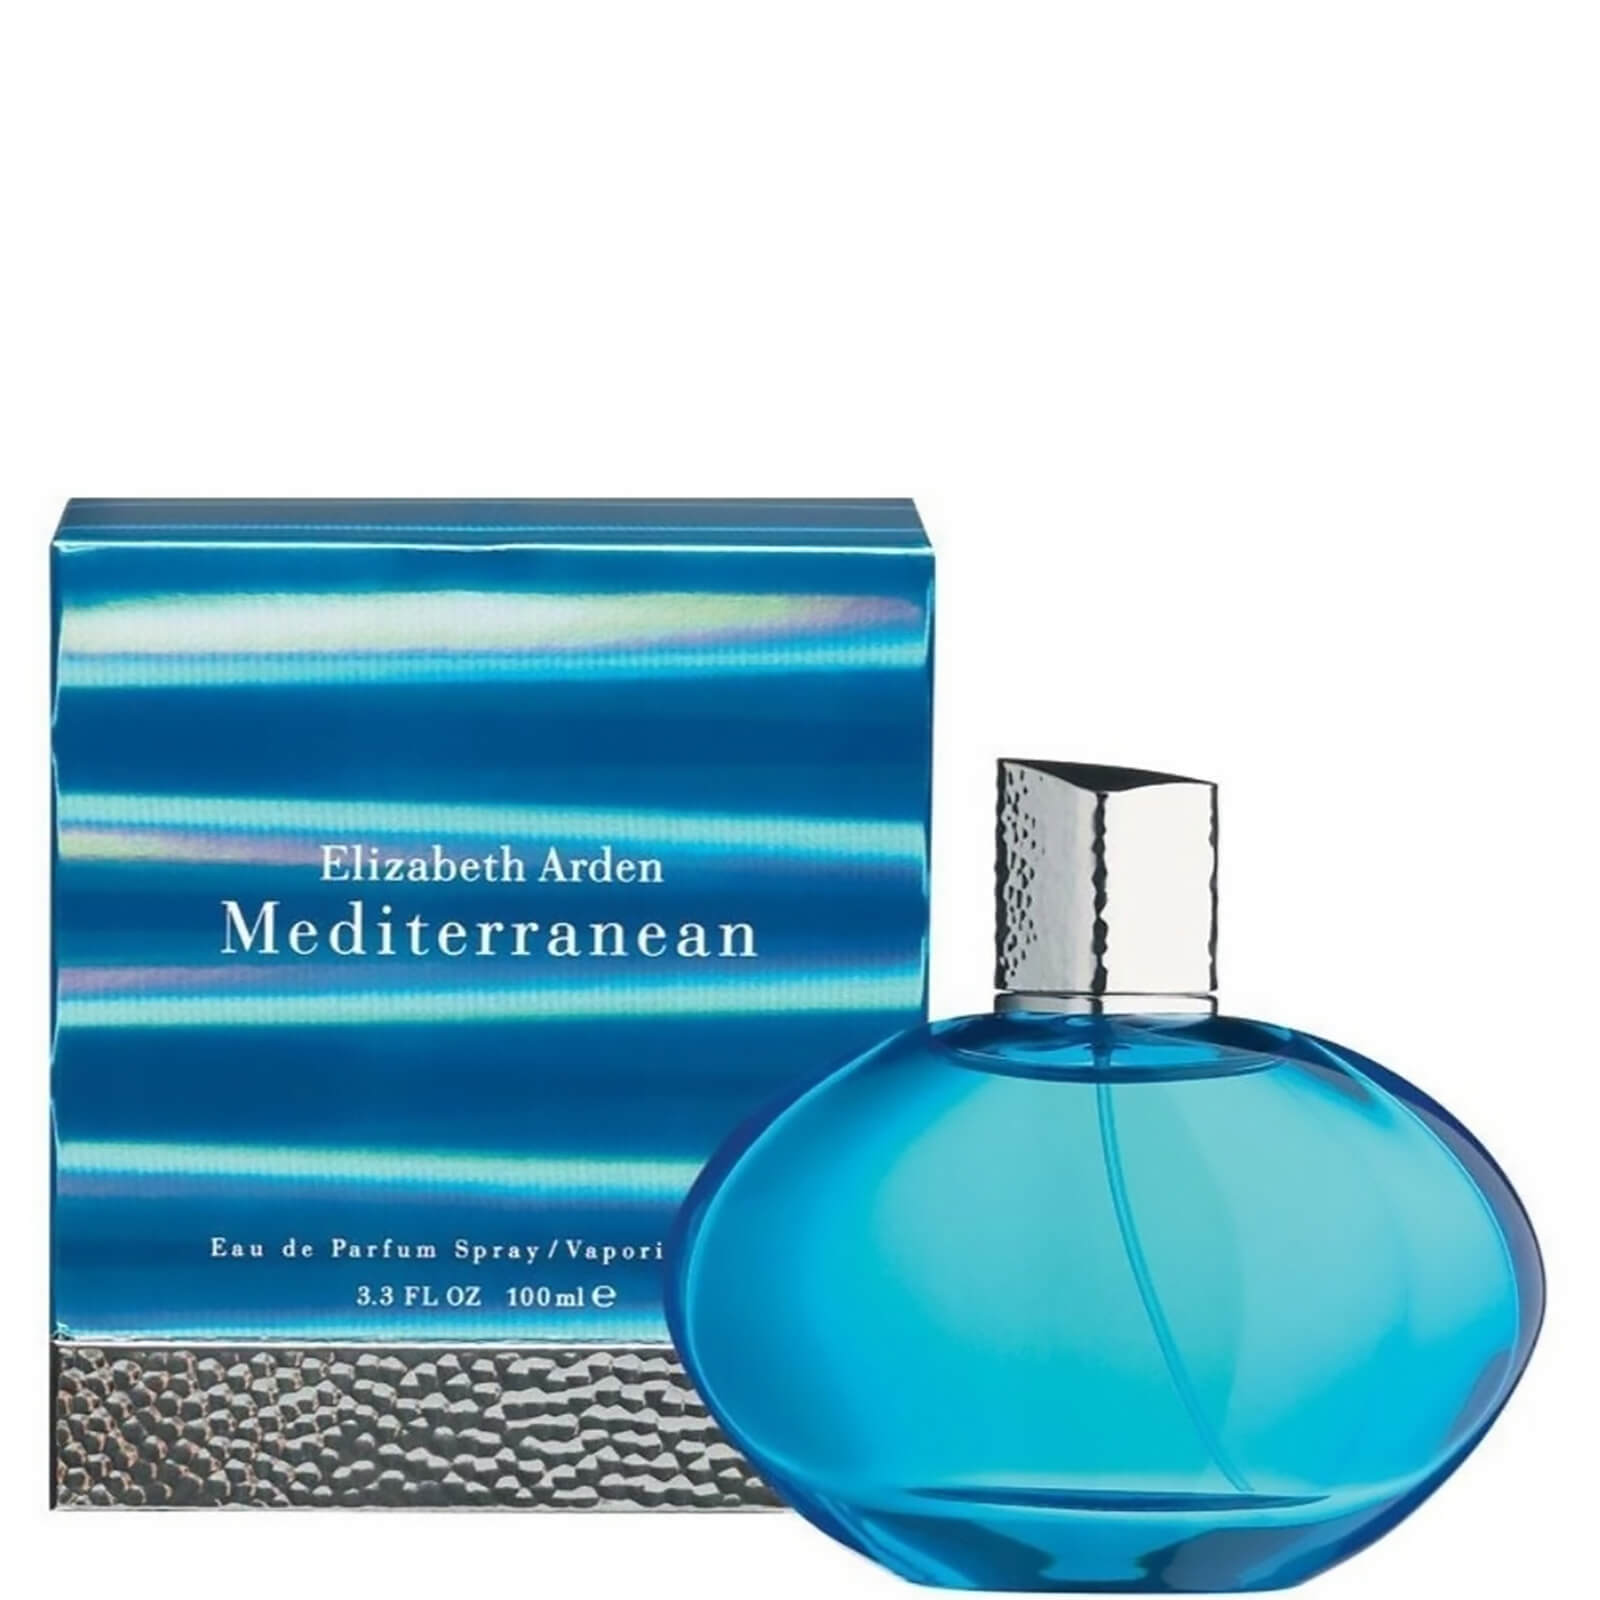 Agua de perfume Mediterranean de Elizabeth Arden (100 ml)